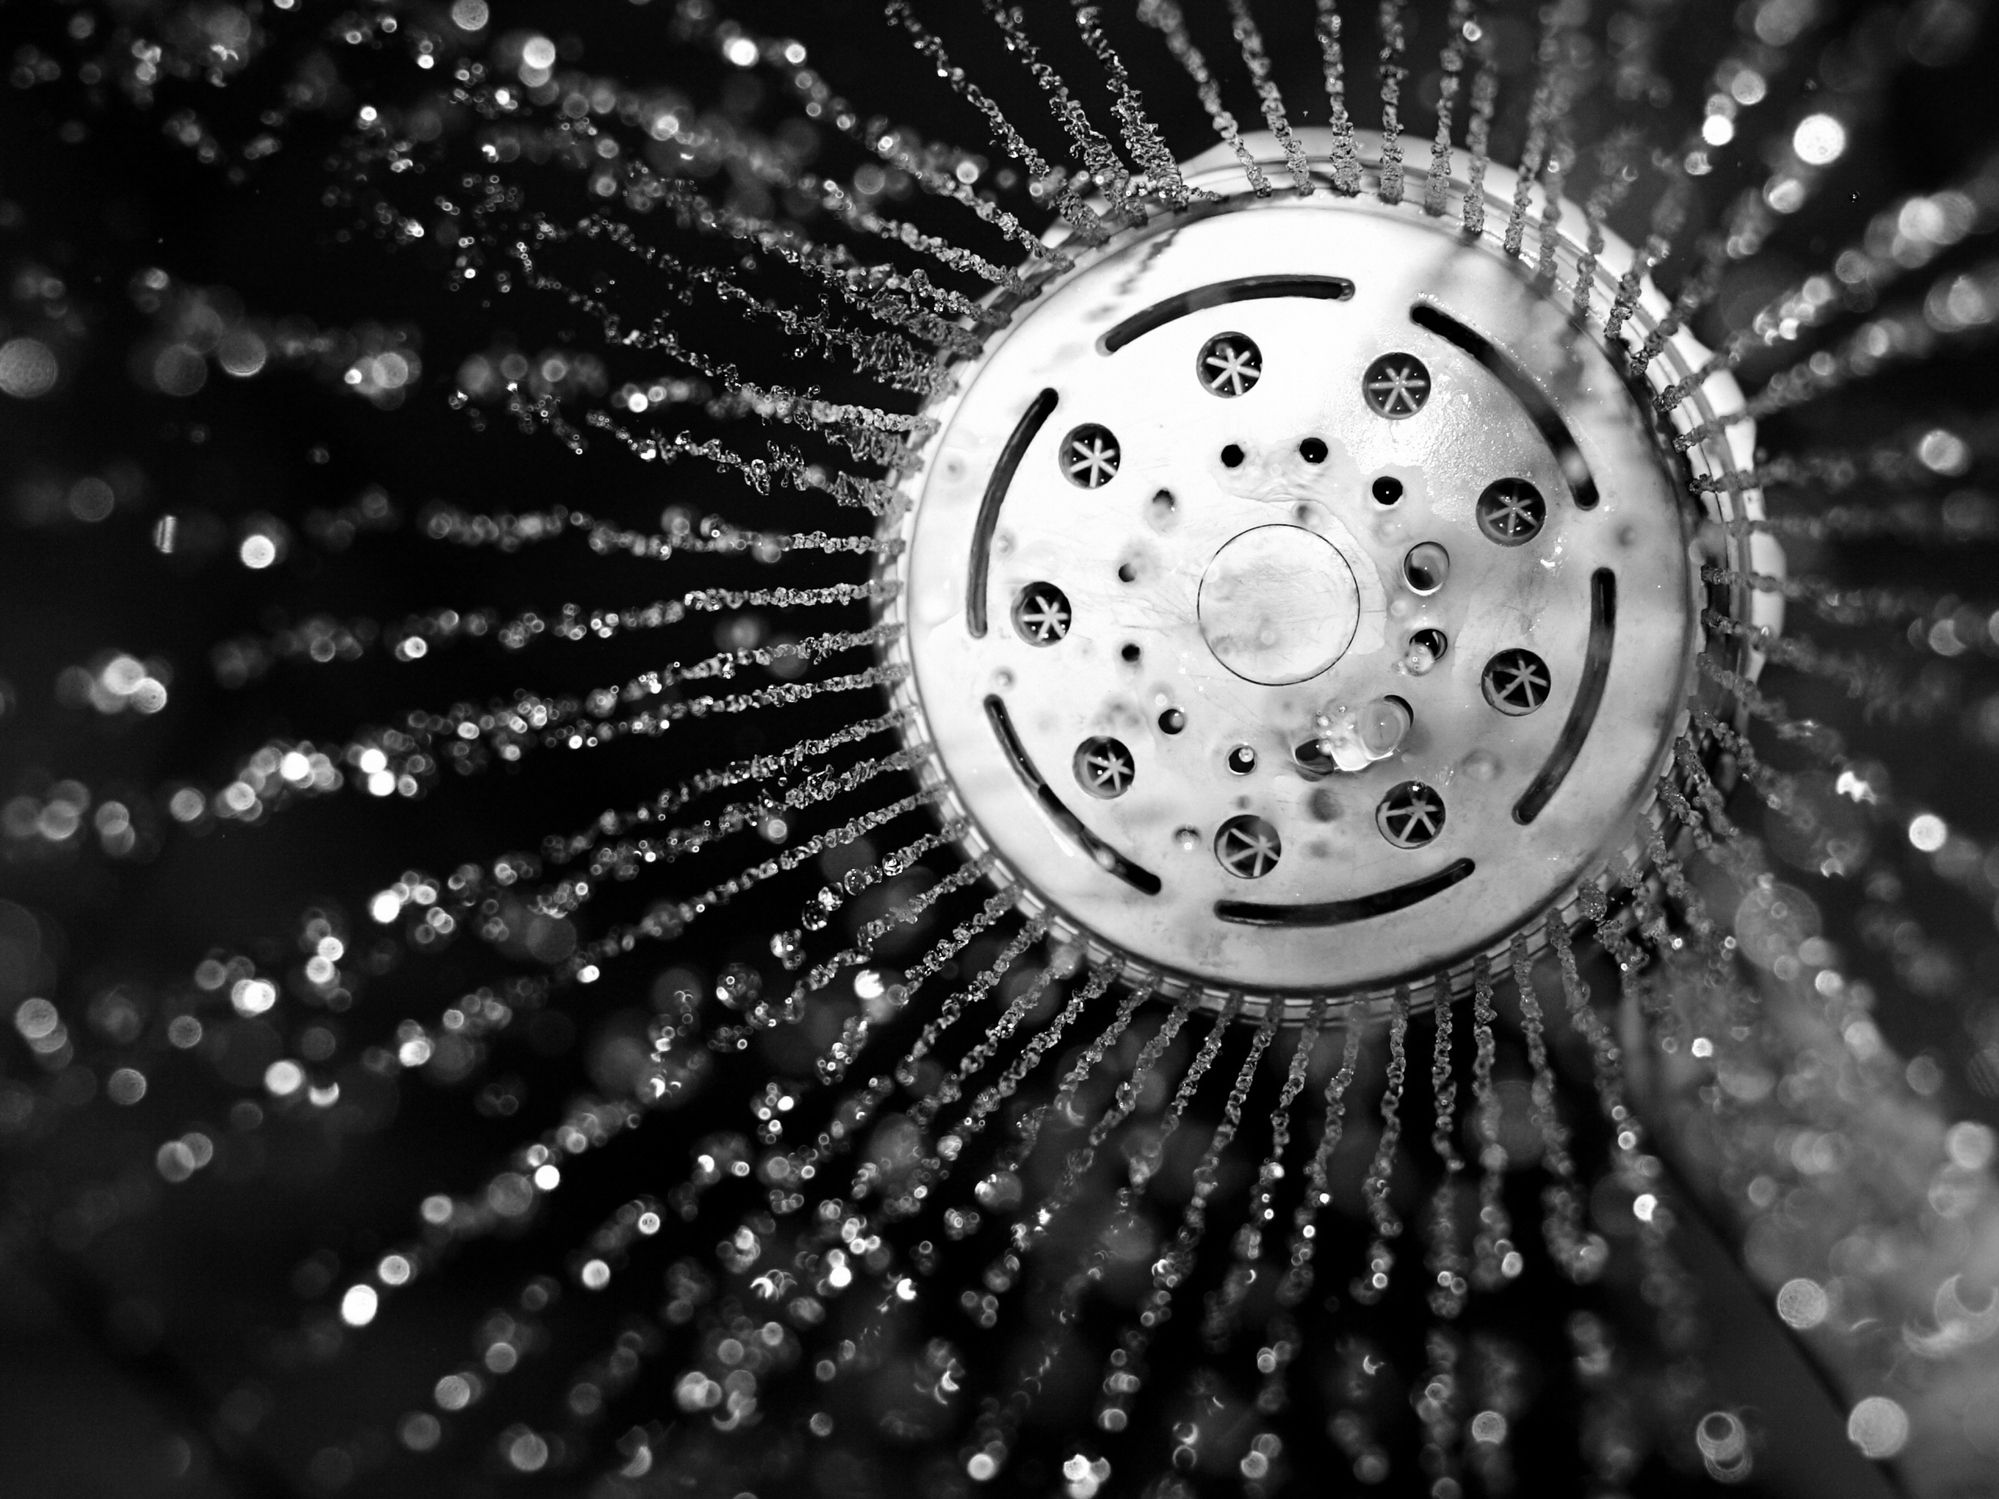 Cómo limpiar la alcachofa de la ducha paso a paso: el truco que SÍ funciona  (con video)